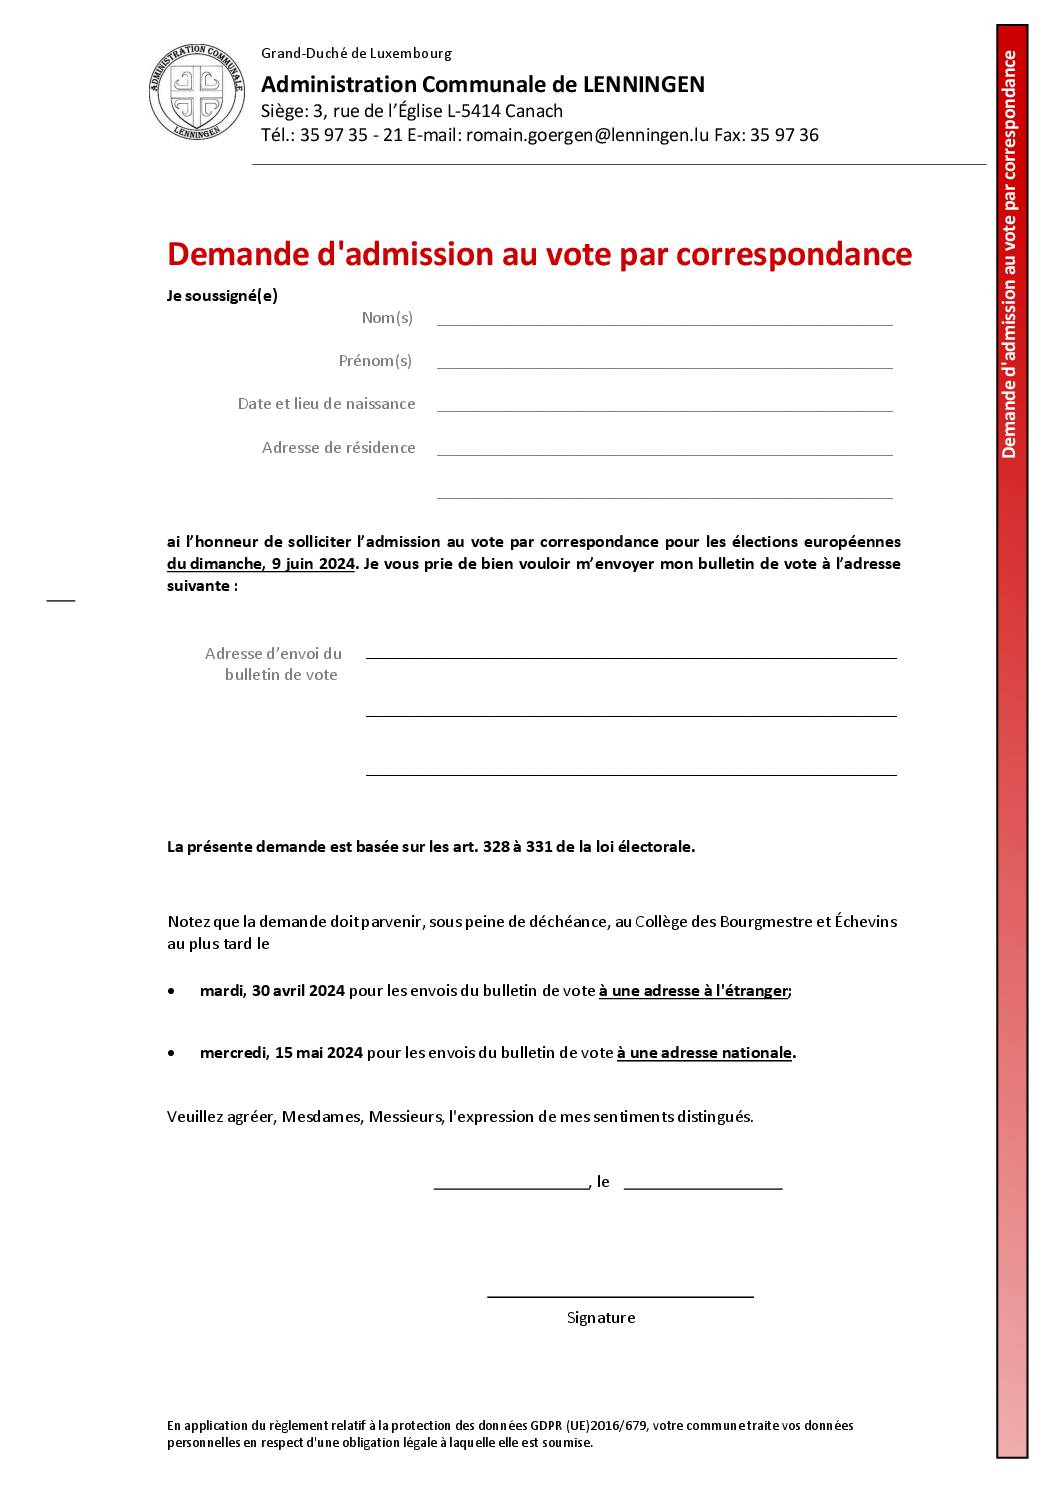 Formulaire de demande de vote par correspondance pour les élections européennes du 9 juin 2024